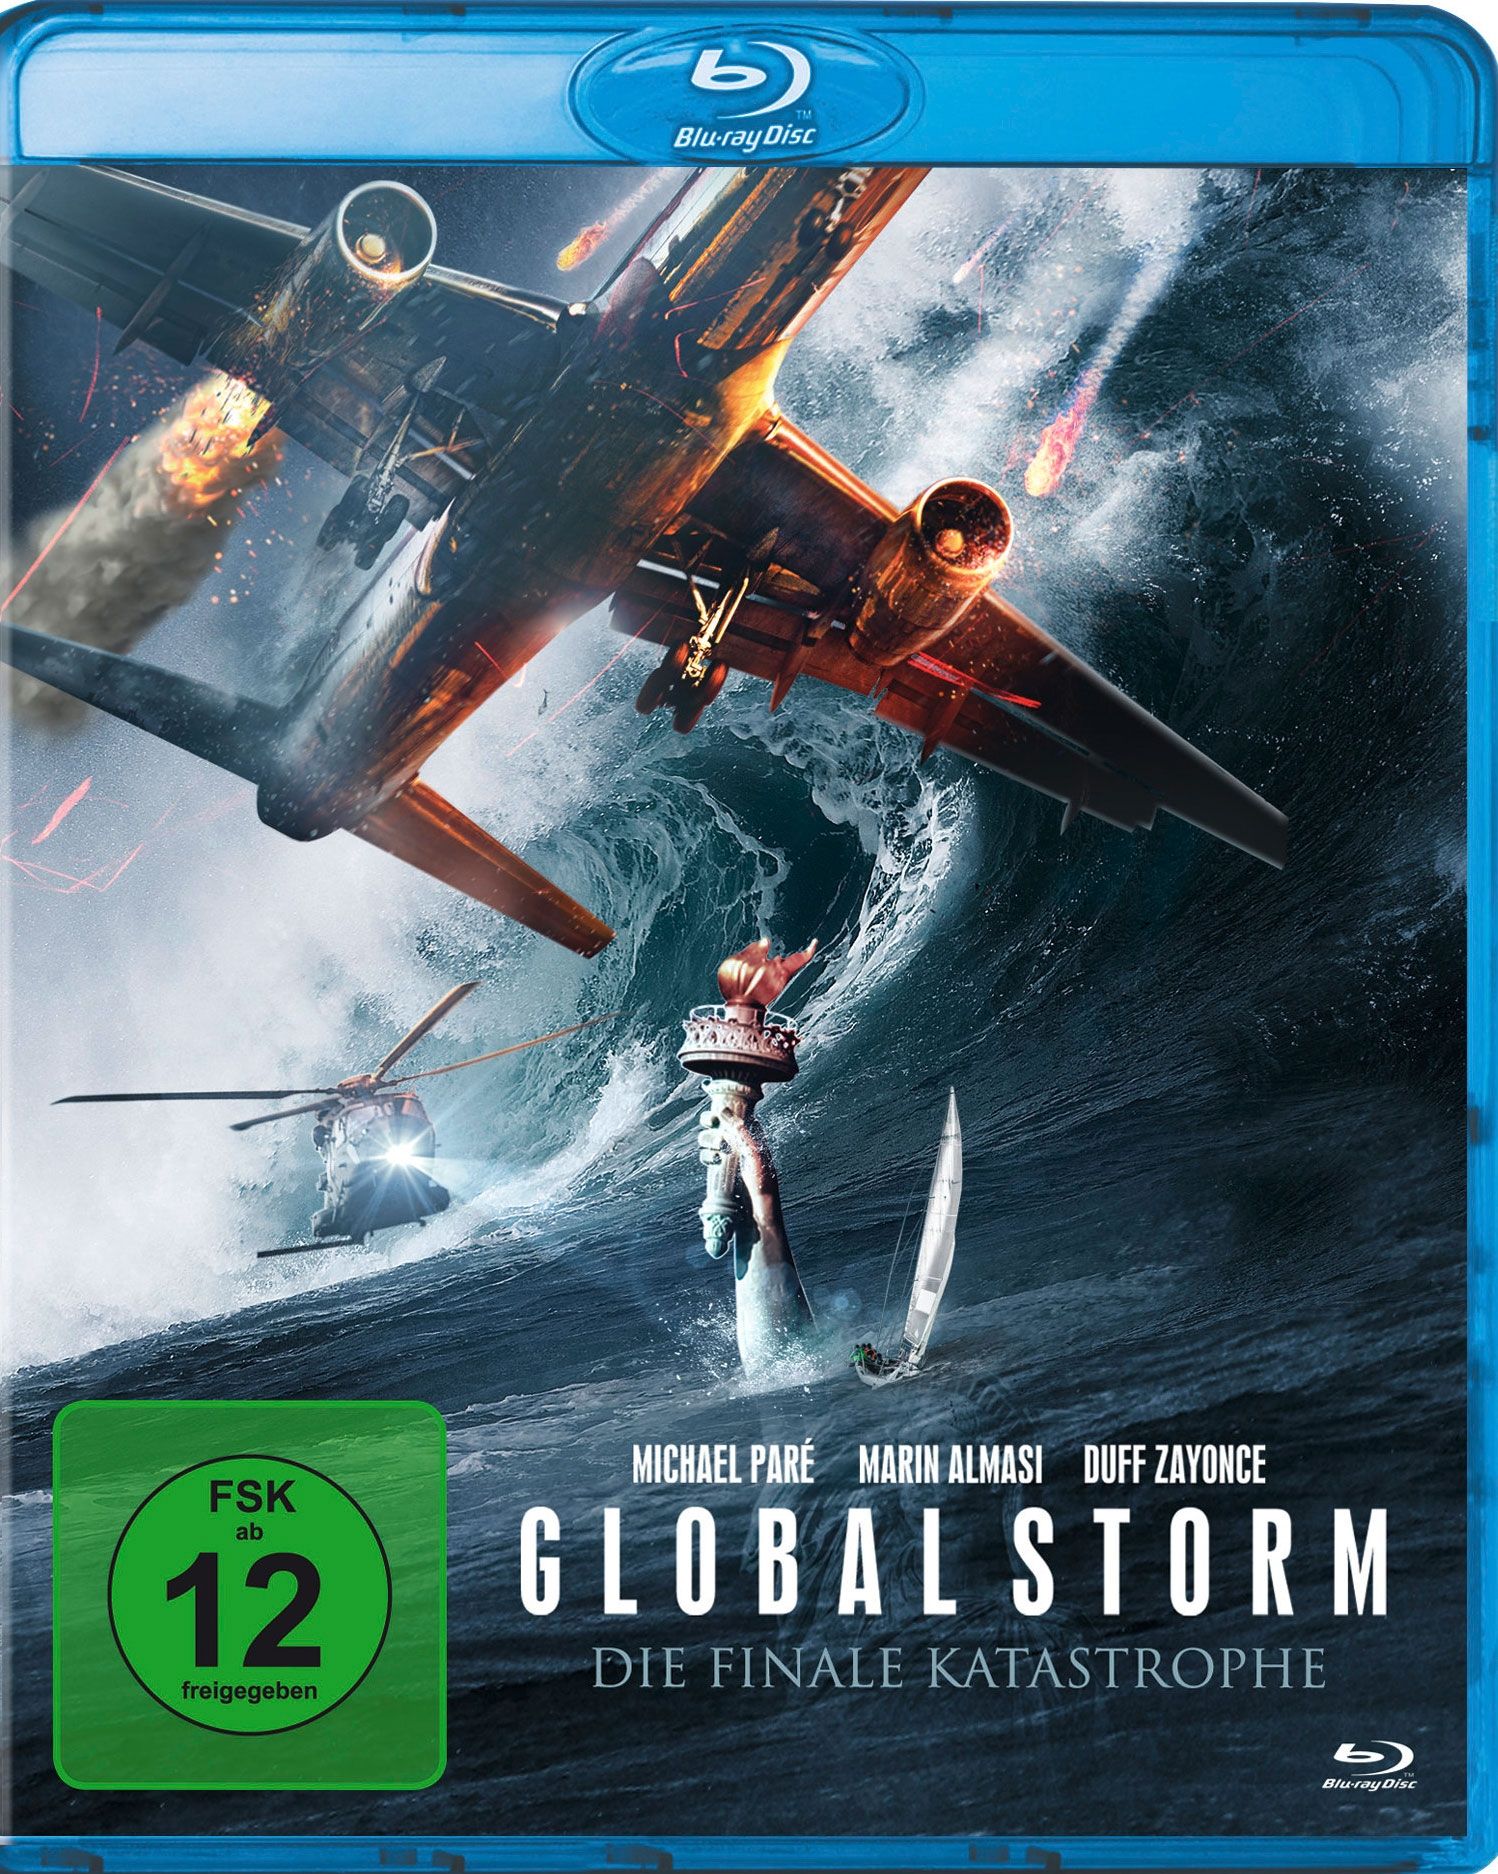 Global Storm - Die finale Katastrophe (BLURAY)